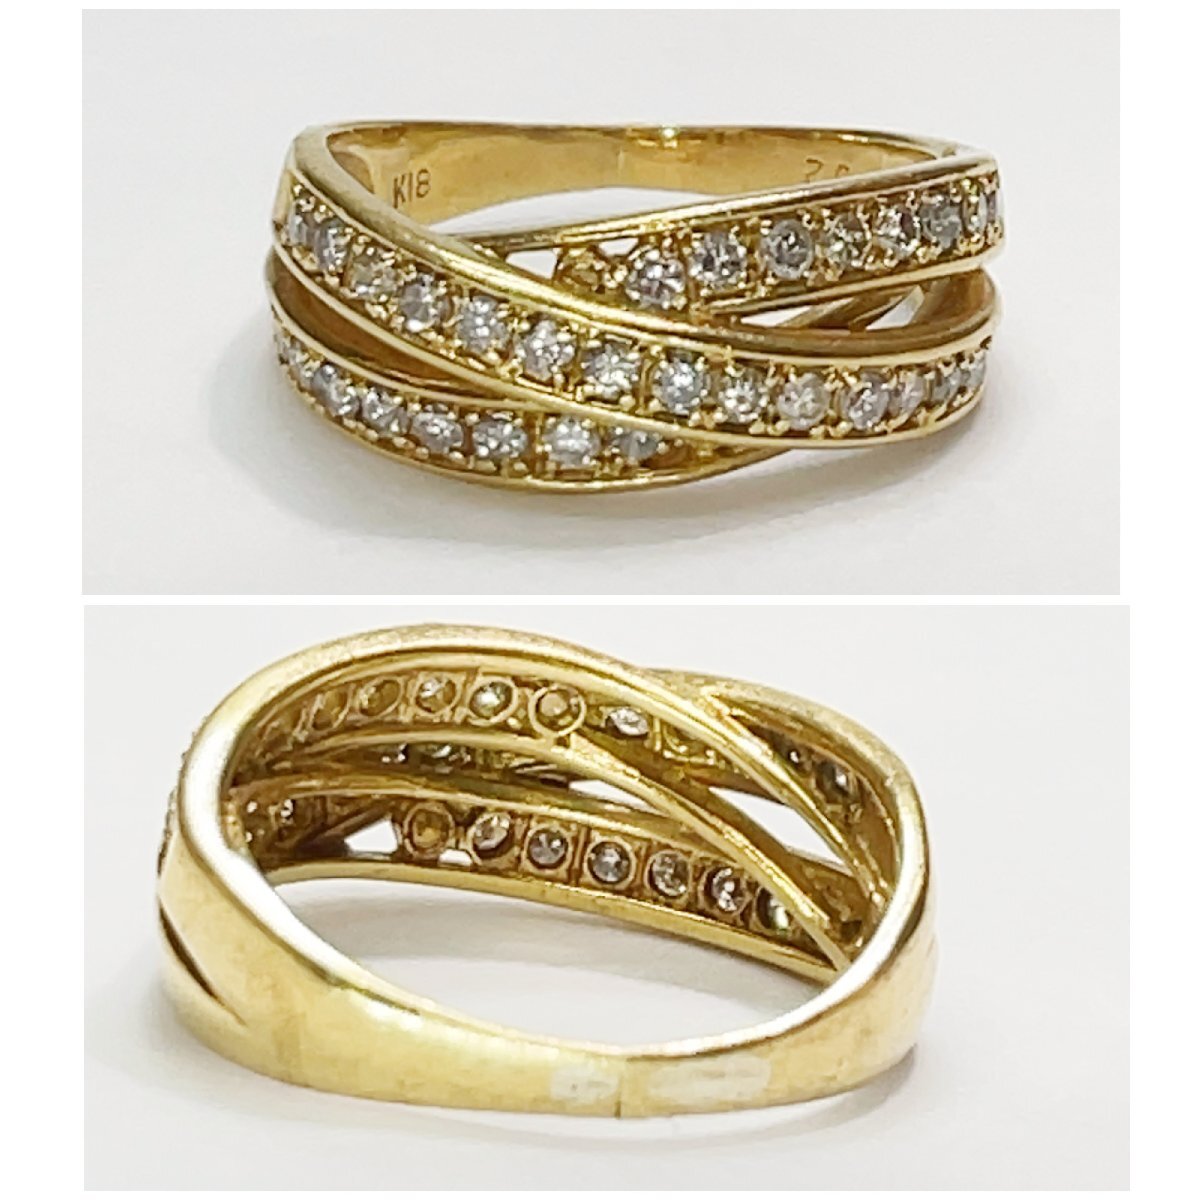 美品 K18 ダイヤモンド リング 約12号 約4.9g 指輪 GOLD ゴールド 18金 750 18K ダイヤ 貴金属 刻印 レディース アクセサリー エタニティの画像4